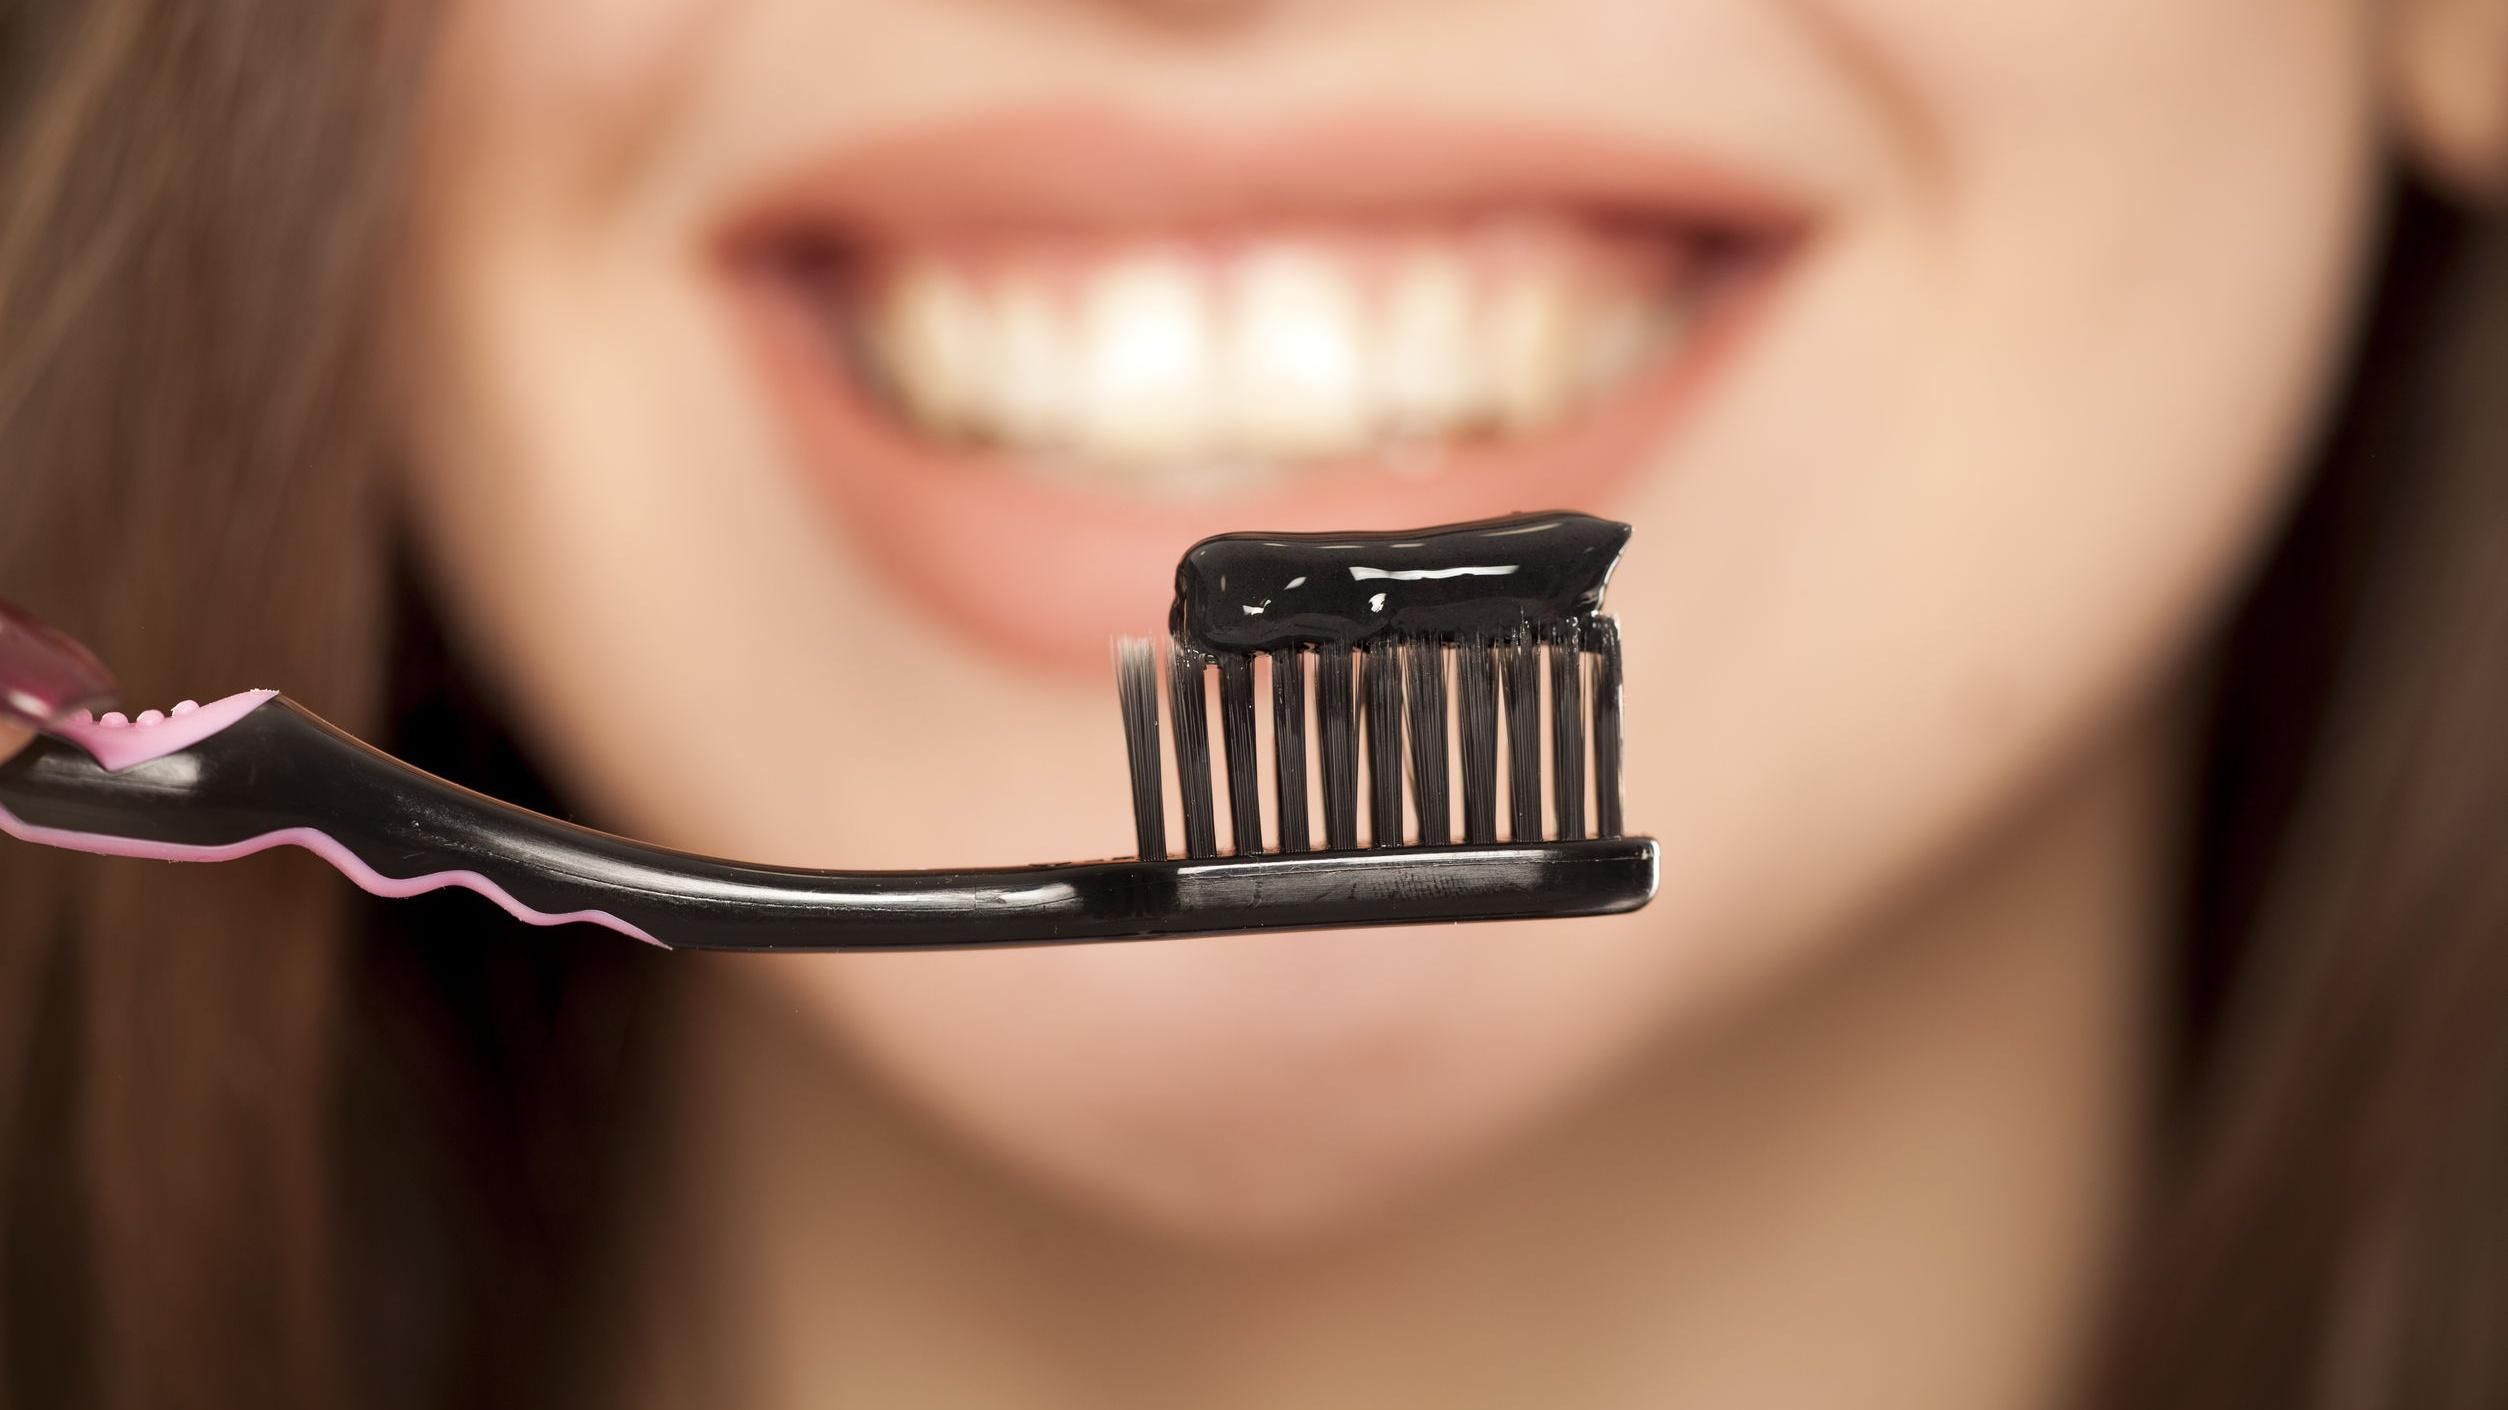 Черные пасты с углем не отбеливают зубы, – стоматологи